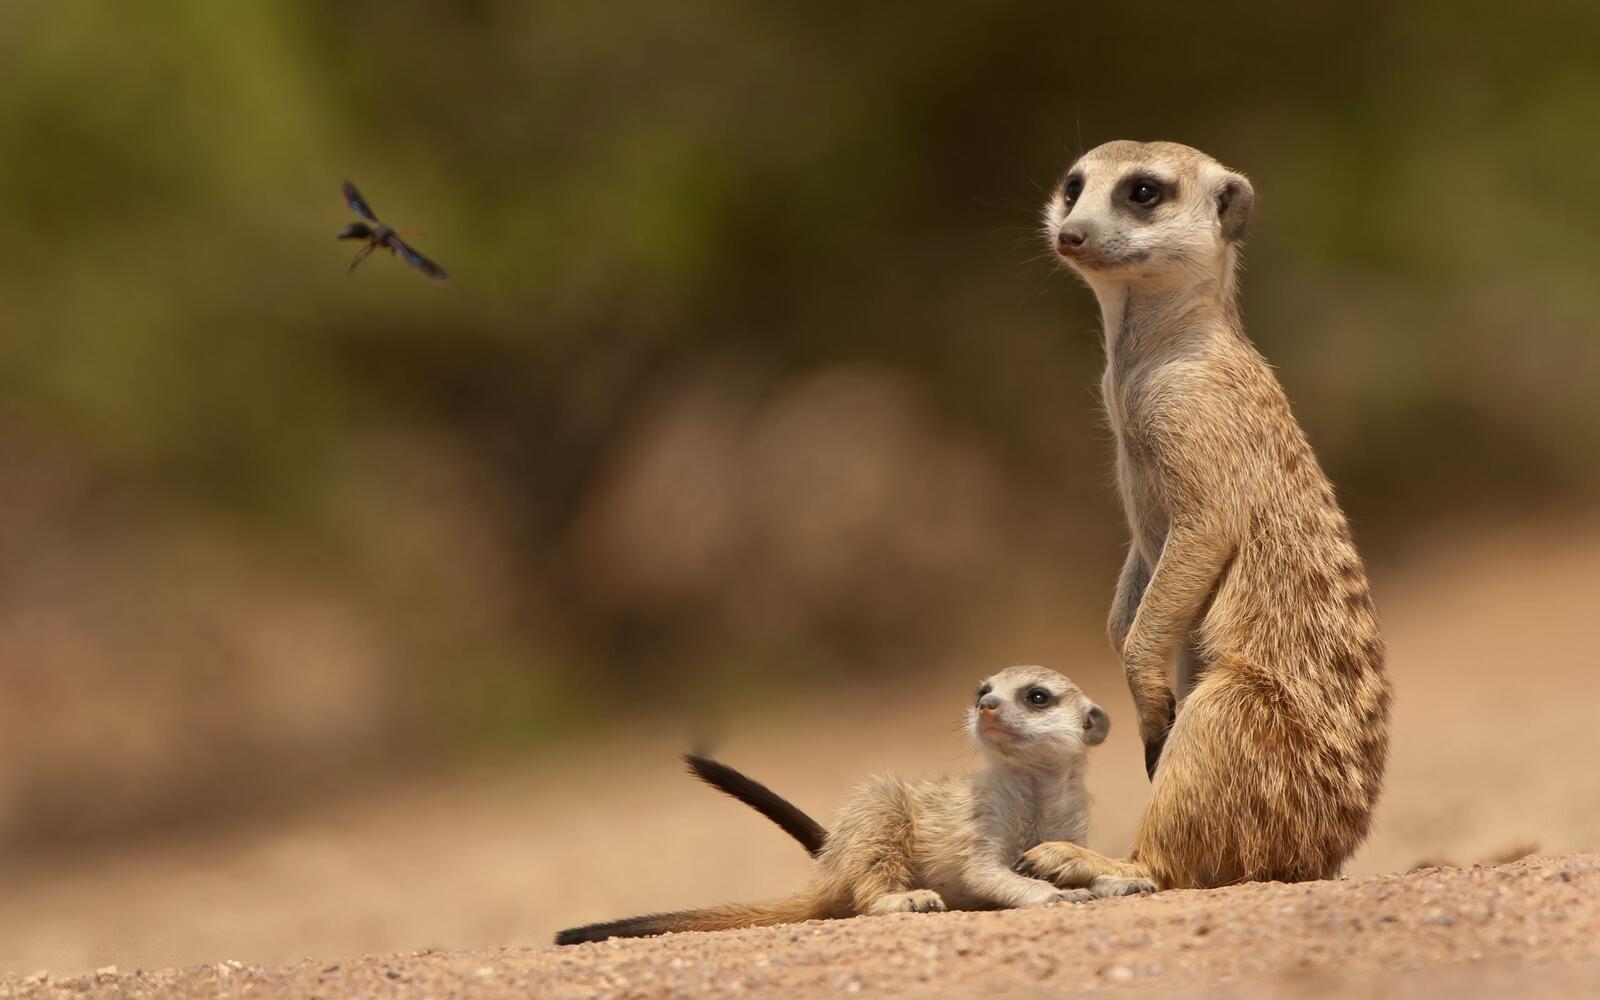 Wallpapers meerkats stand muzzle on the desktop